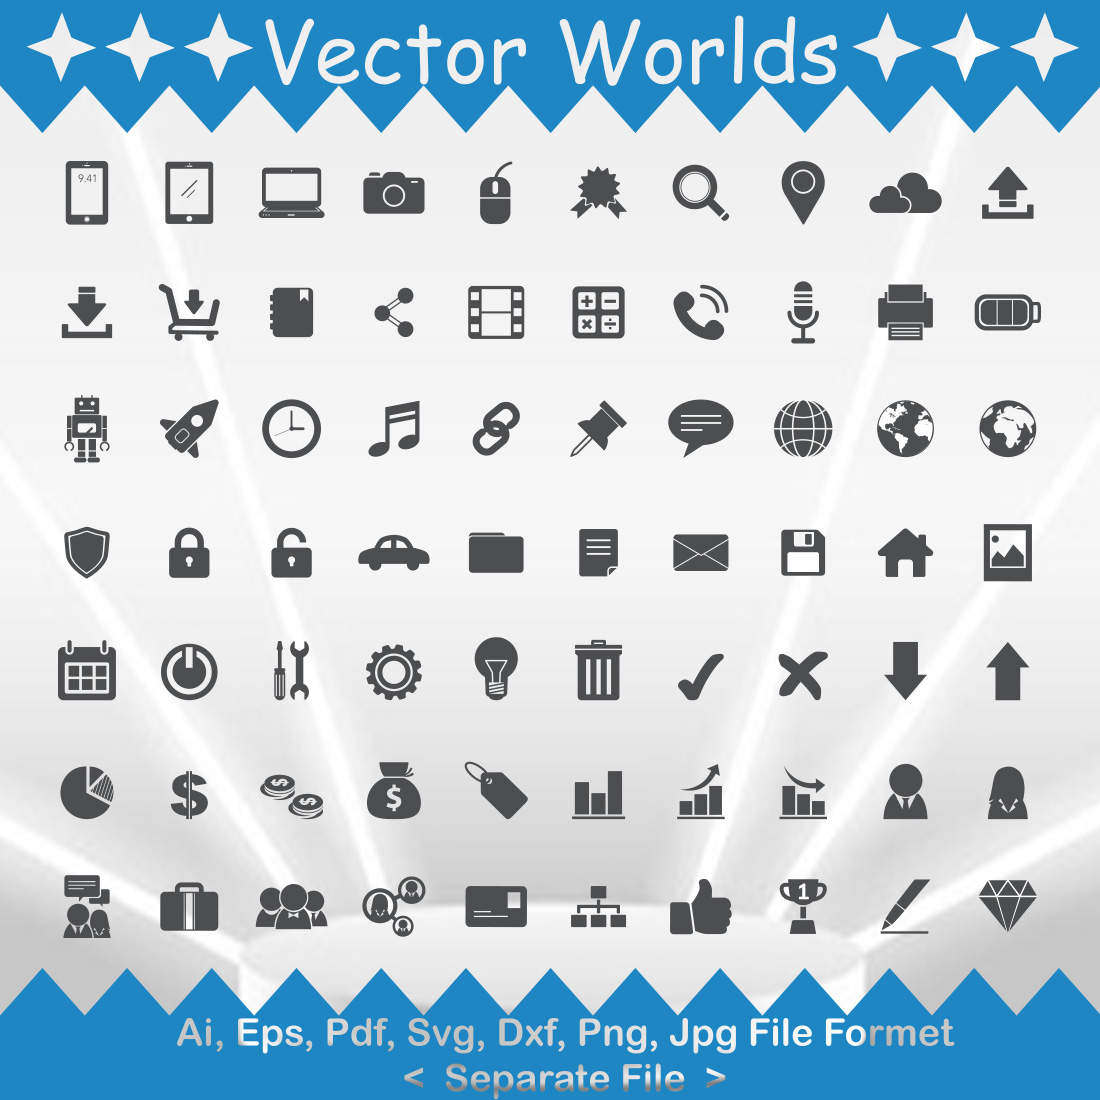 Symbol Icon SVG Vector Design cover image.